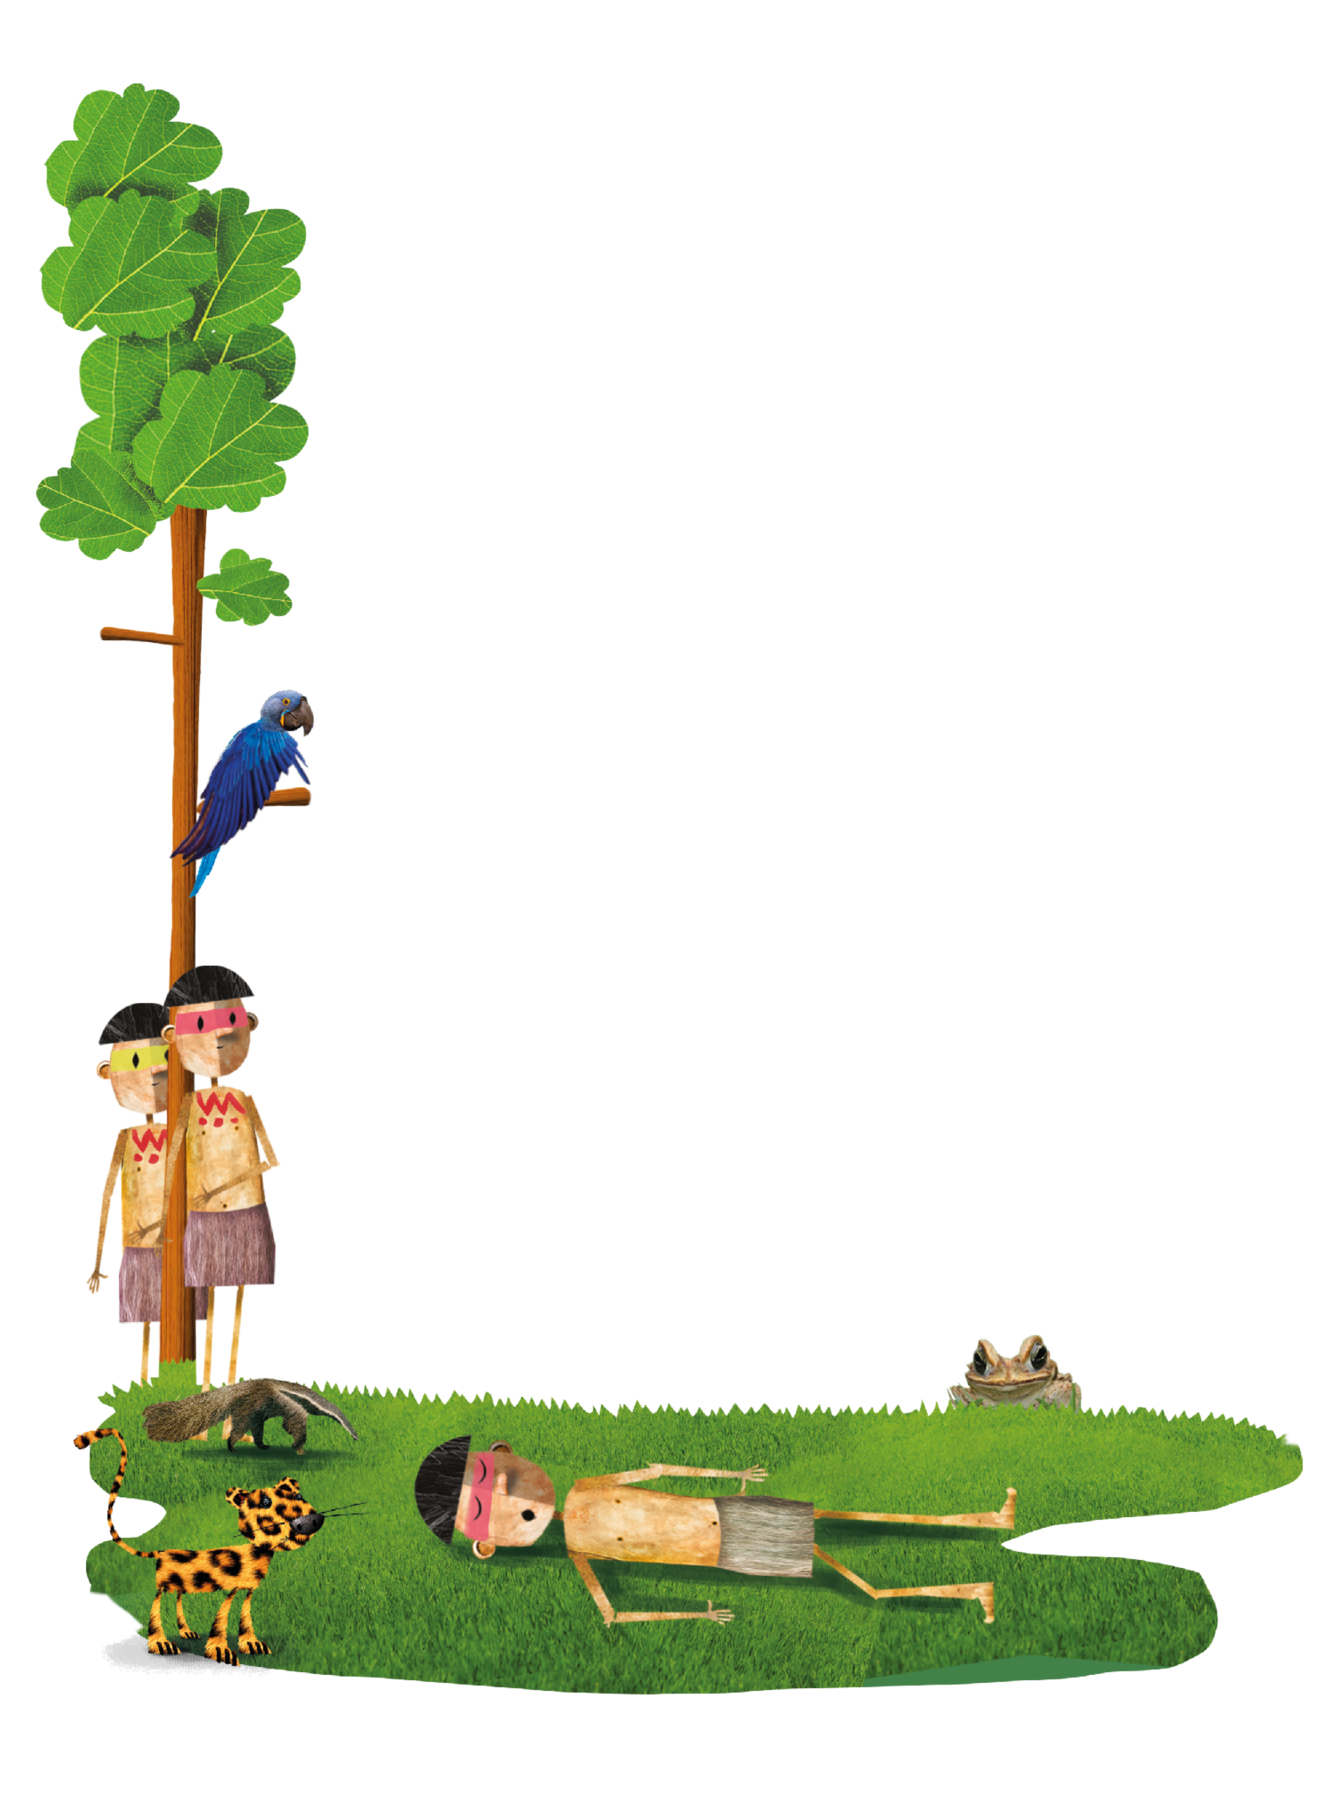 Ilustração. Na parte inferior, um menino indígena com cabelos pretos e liso, uma saia cinza e uma pintura rosa horizontal feita nos olhos. Ele está deitado e dormindo em um gramado verde. Ao redor dele, há uma onça, um sapo e um tamanduá. À esquerda da cena, uma árvore com tronco alto e folhas verdes; em um dos galhos, uma arara azul. Atrás da árvore, dois meninos indígenas observam aquele que está deitado no gramado.